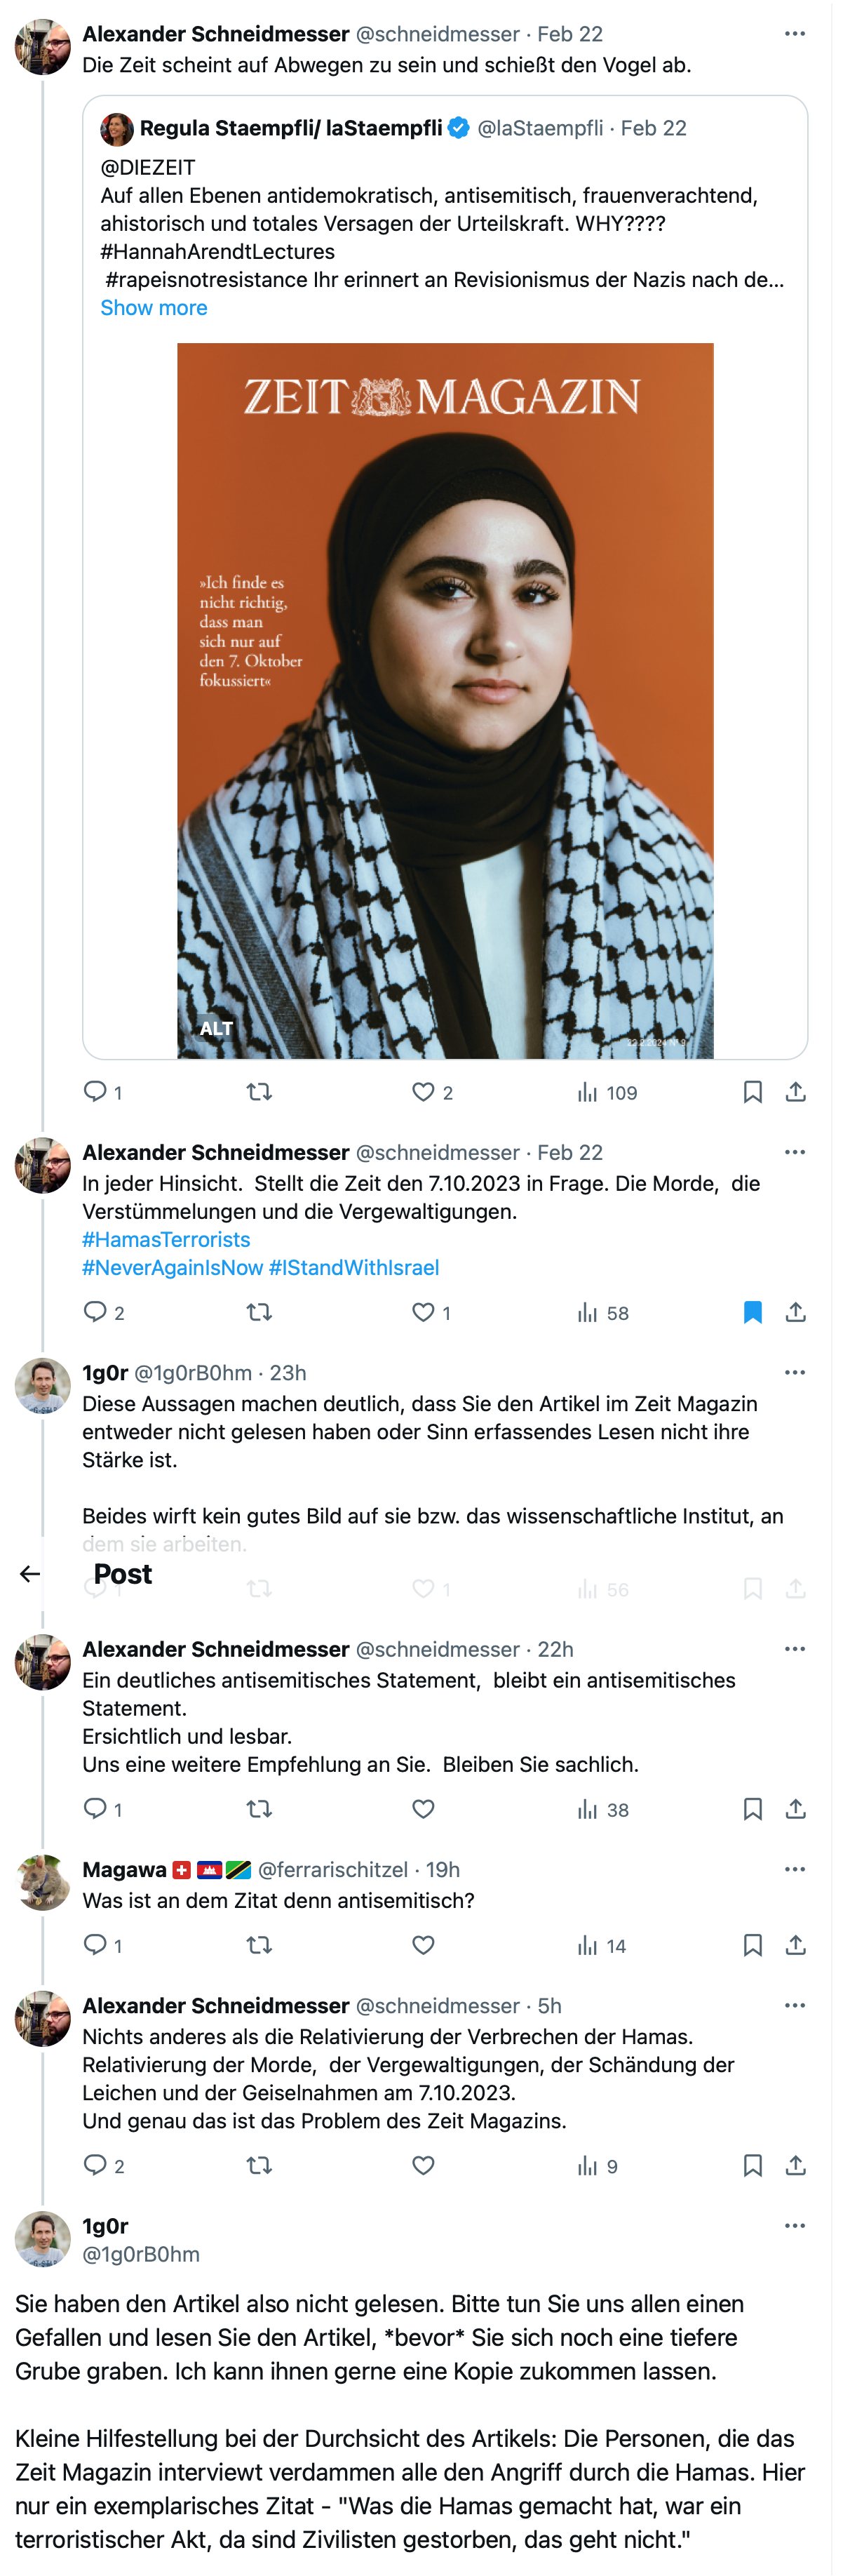 Twitter/X-thread als Beispiel für die künstliche Hysterie über Antisemitismus